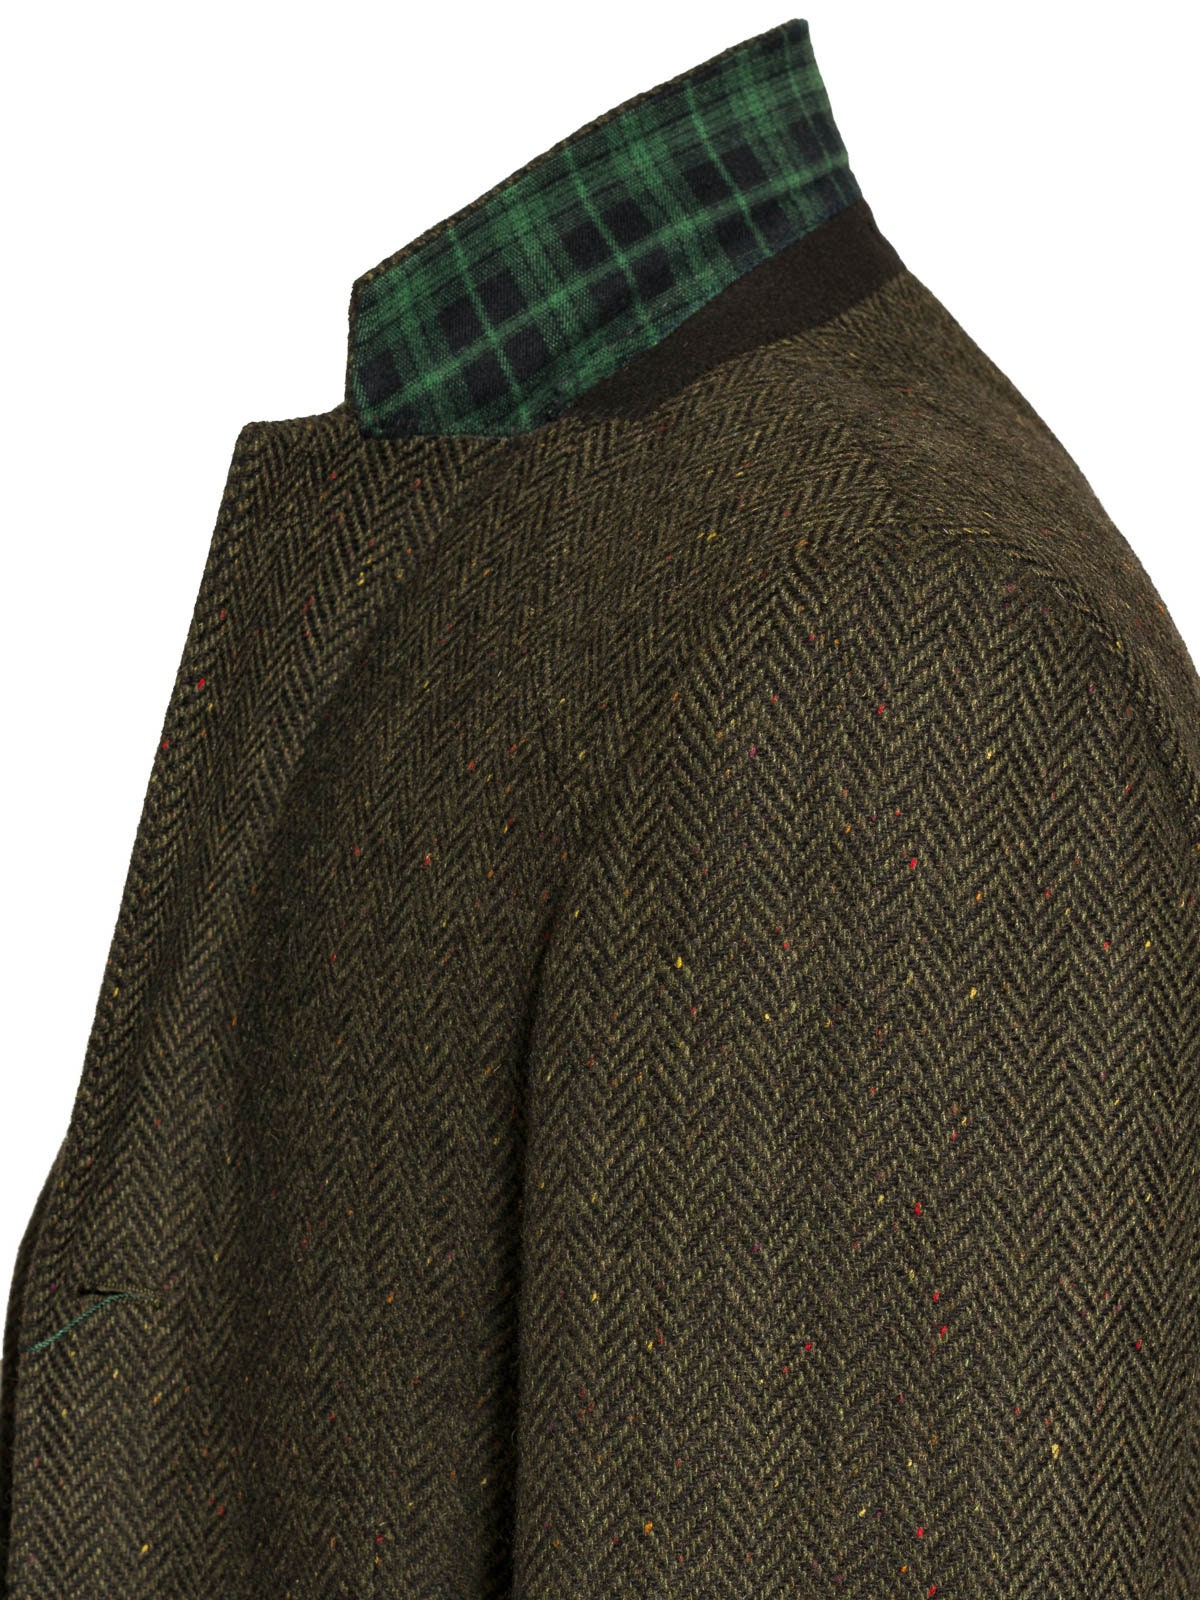 Celtic Tweeds Casement Green Classic Fit Tweed Jacket